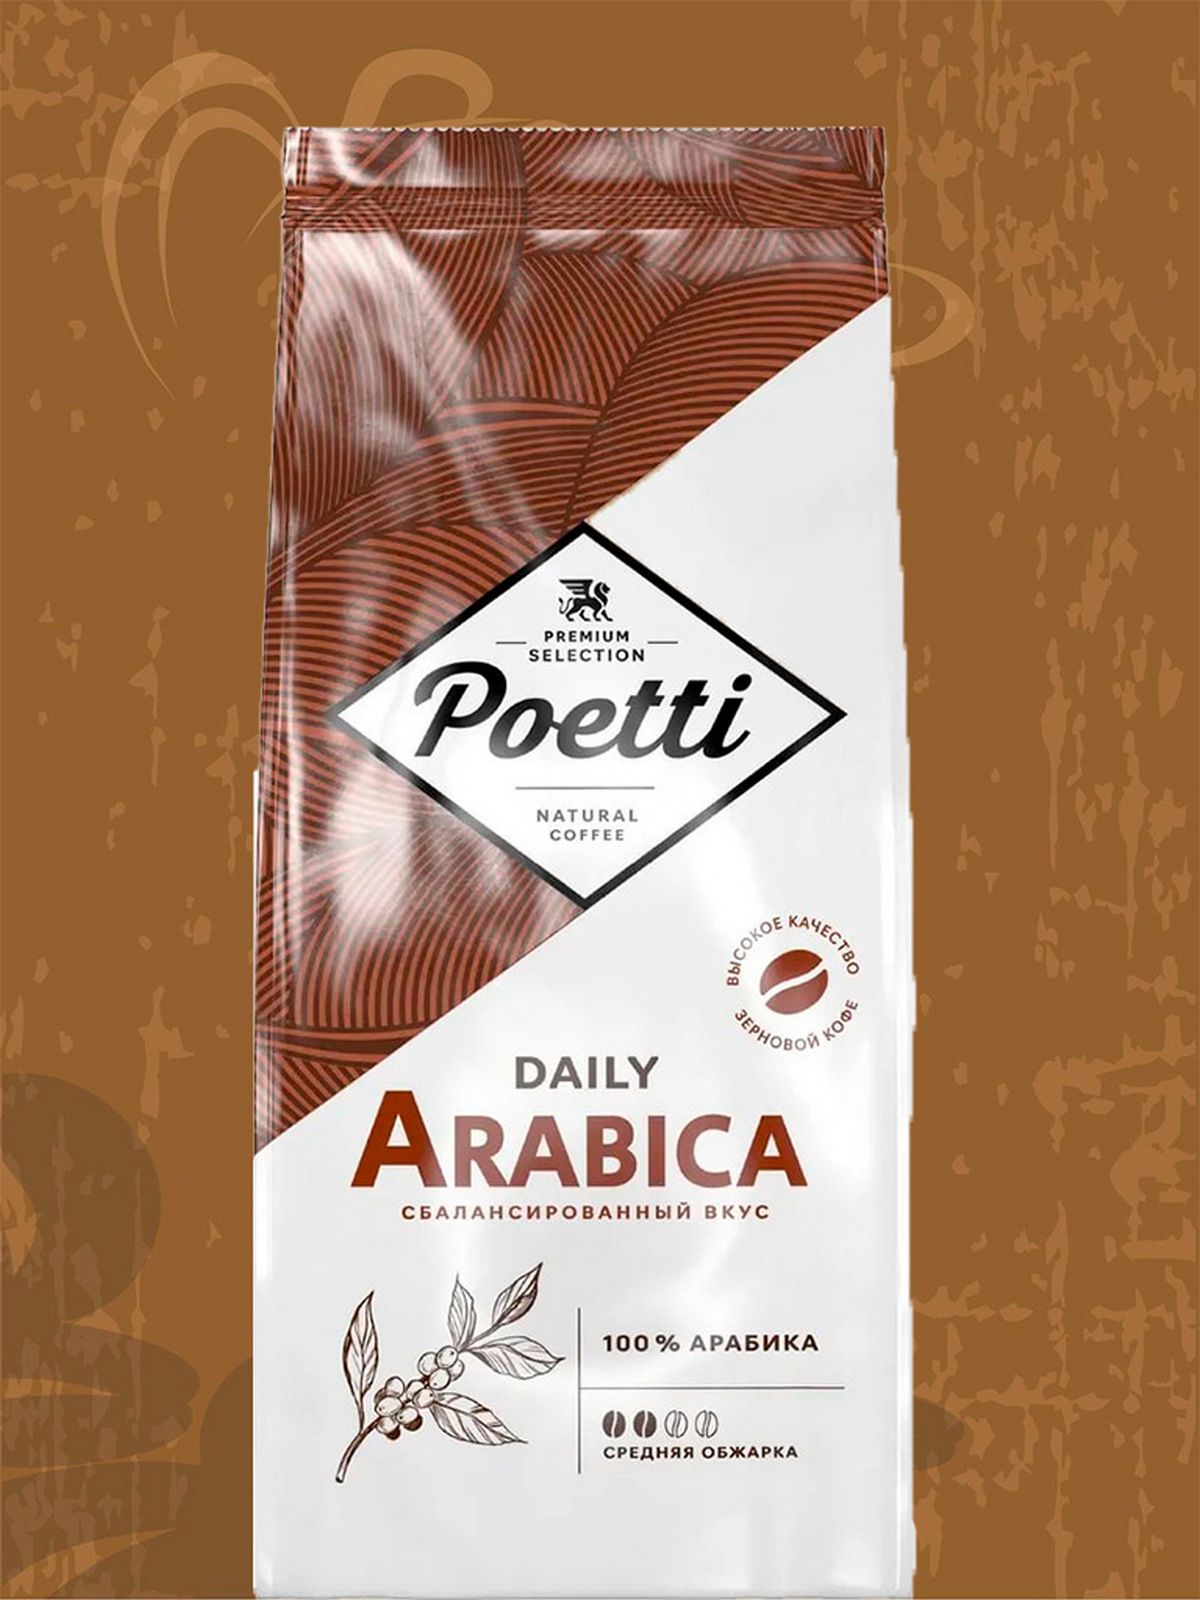 Poetti Daily Arabica цены. Poetti clssico. Кофе daily arabica